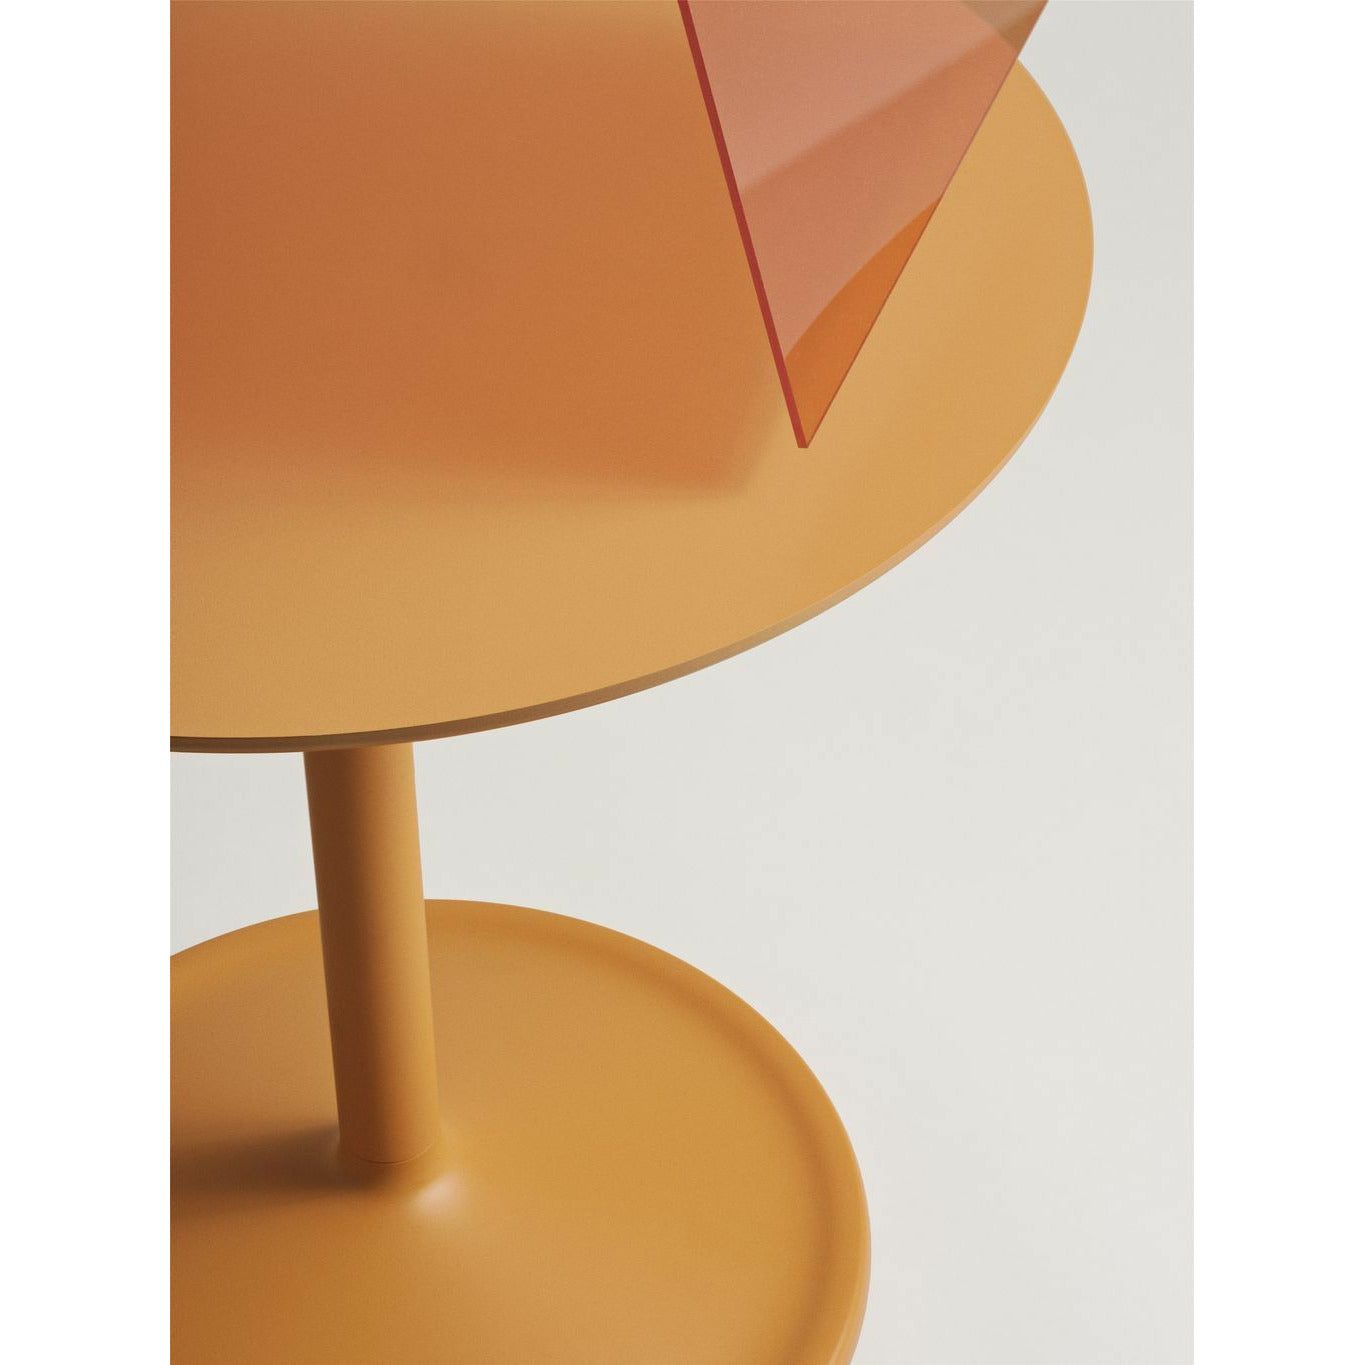 Měkký boční stůl Muuto Øx H 48x48 cm, oranžový